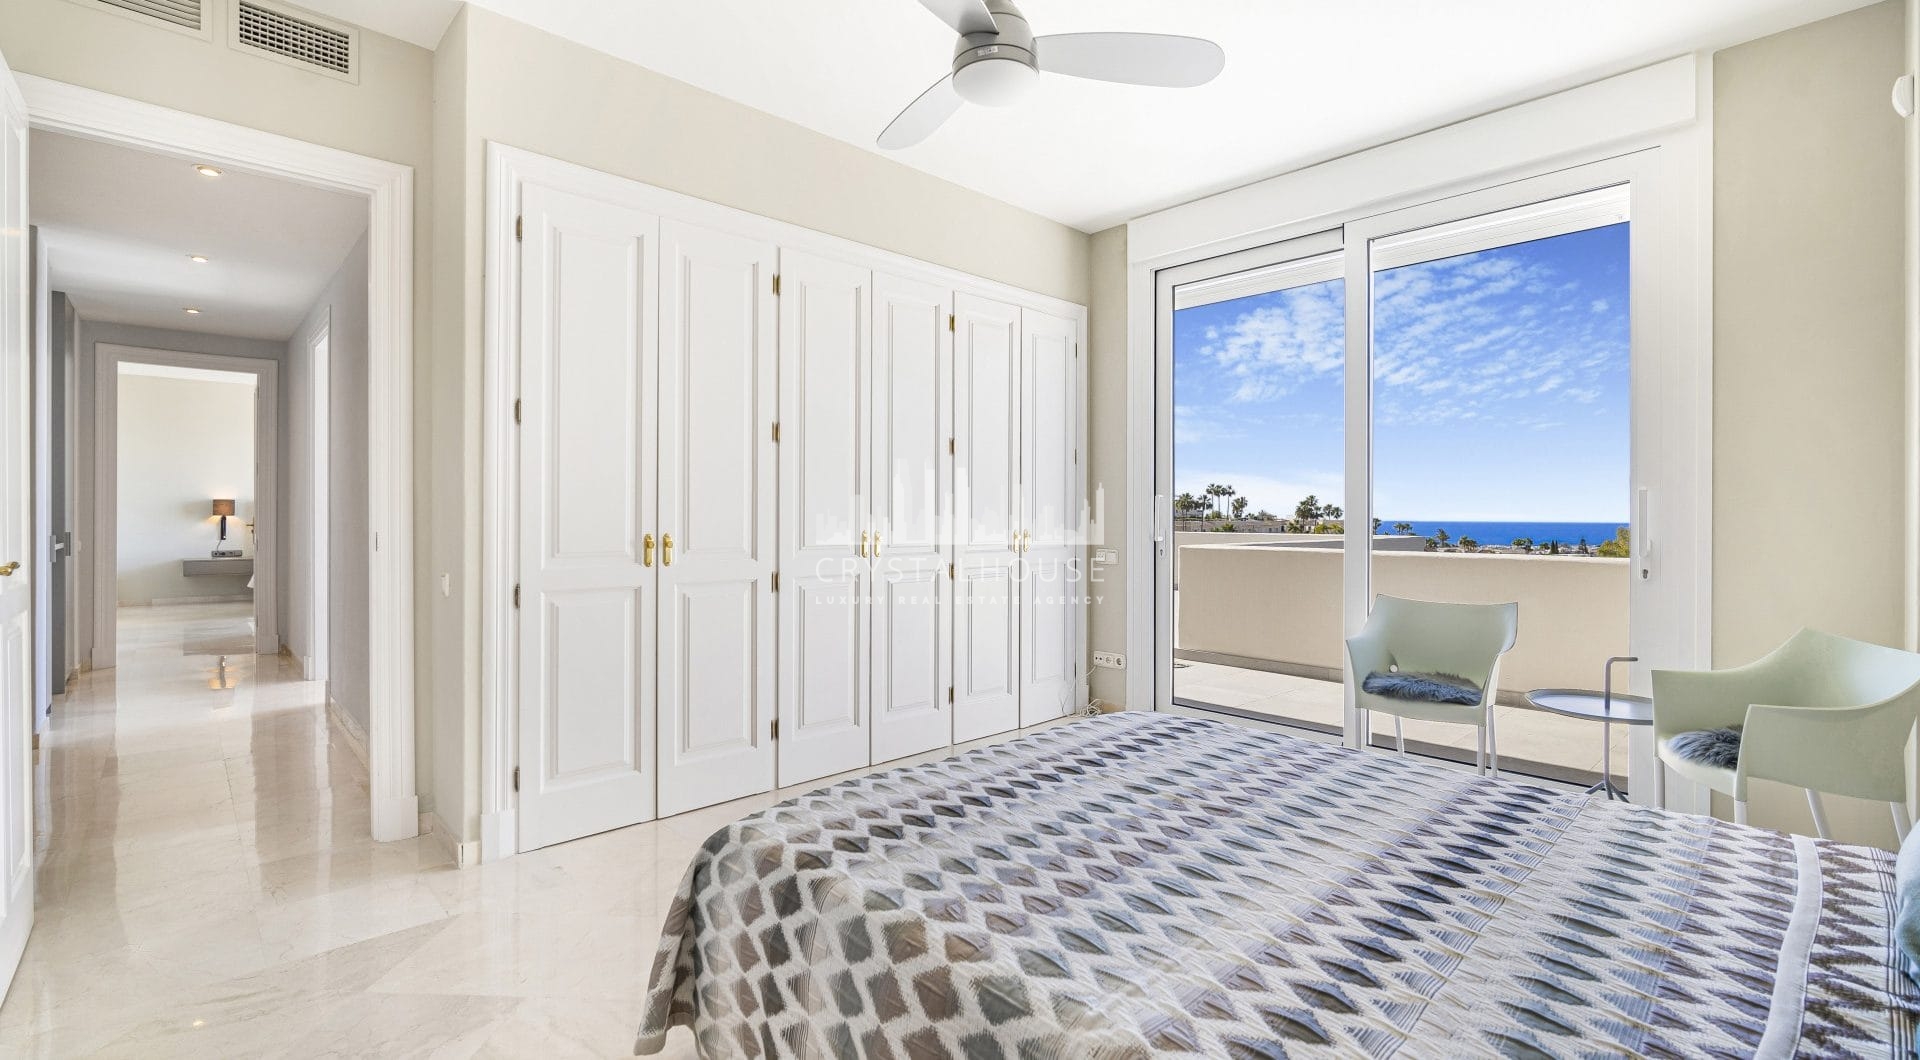 Niepokalane trzy sypialnie, na południe od willi w La Quinta, Benahavis, z zaskakującymi widokami morza